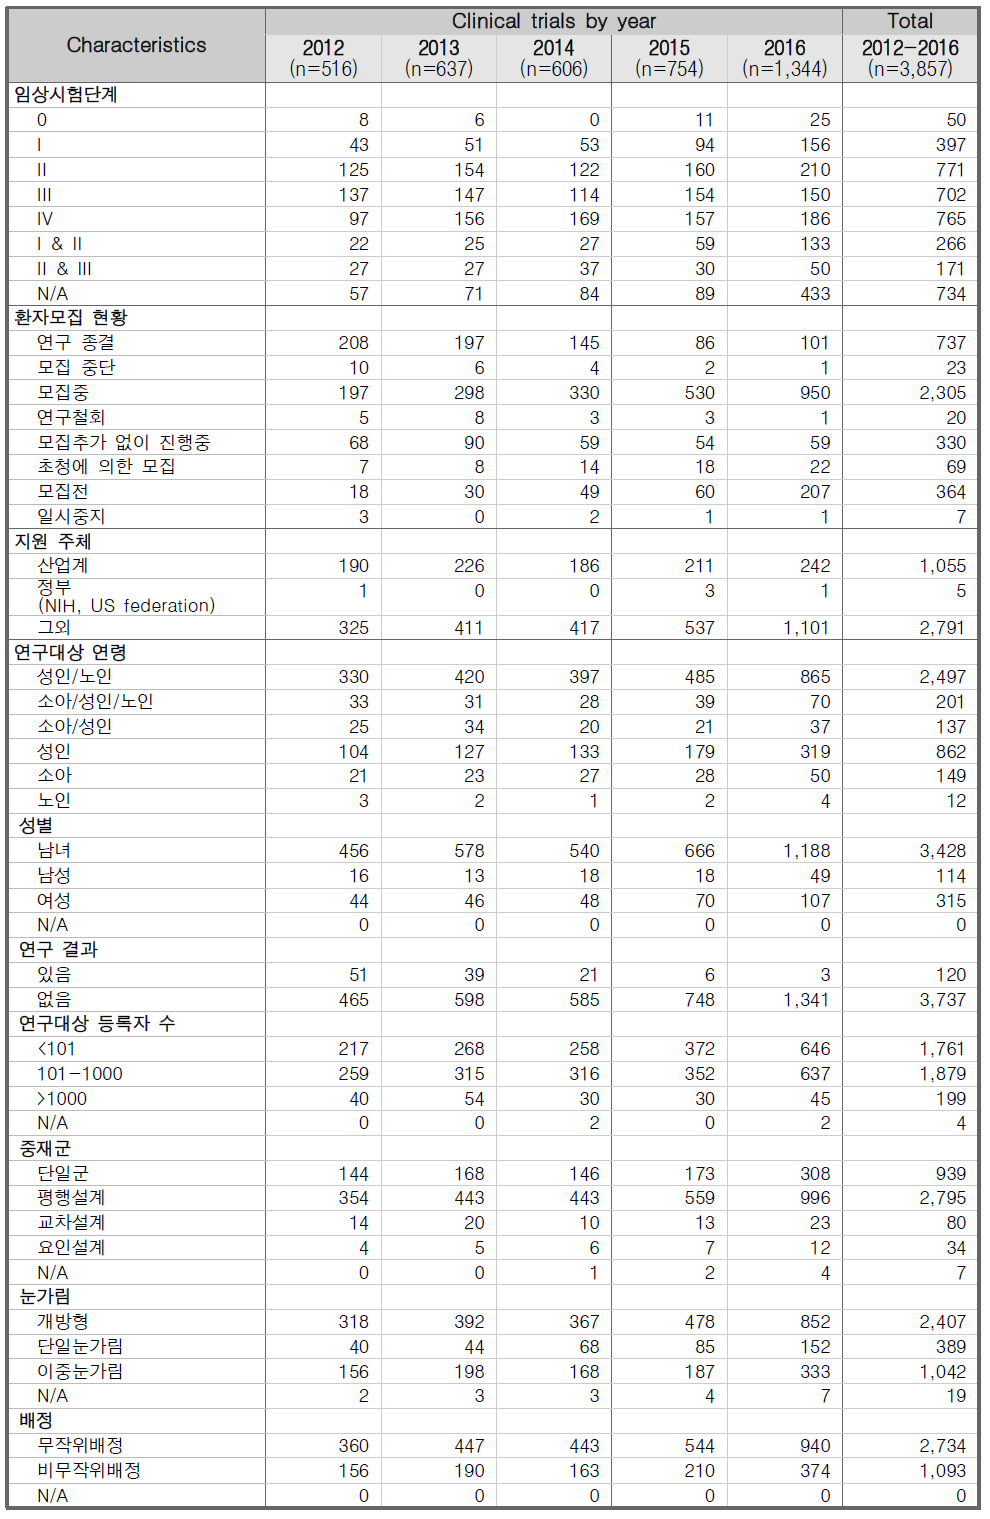 중국에서 수행된 임상시험 세부현황 분석 결과 (2012-2016년)